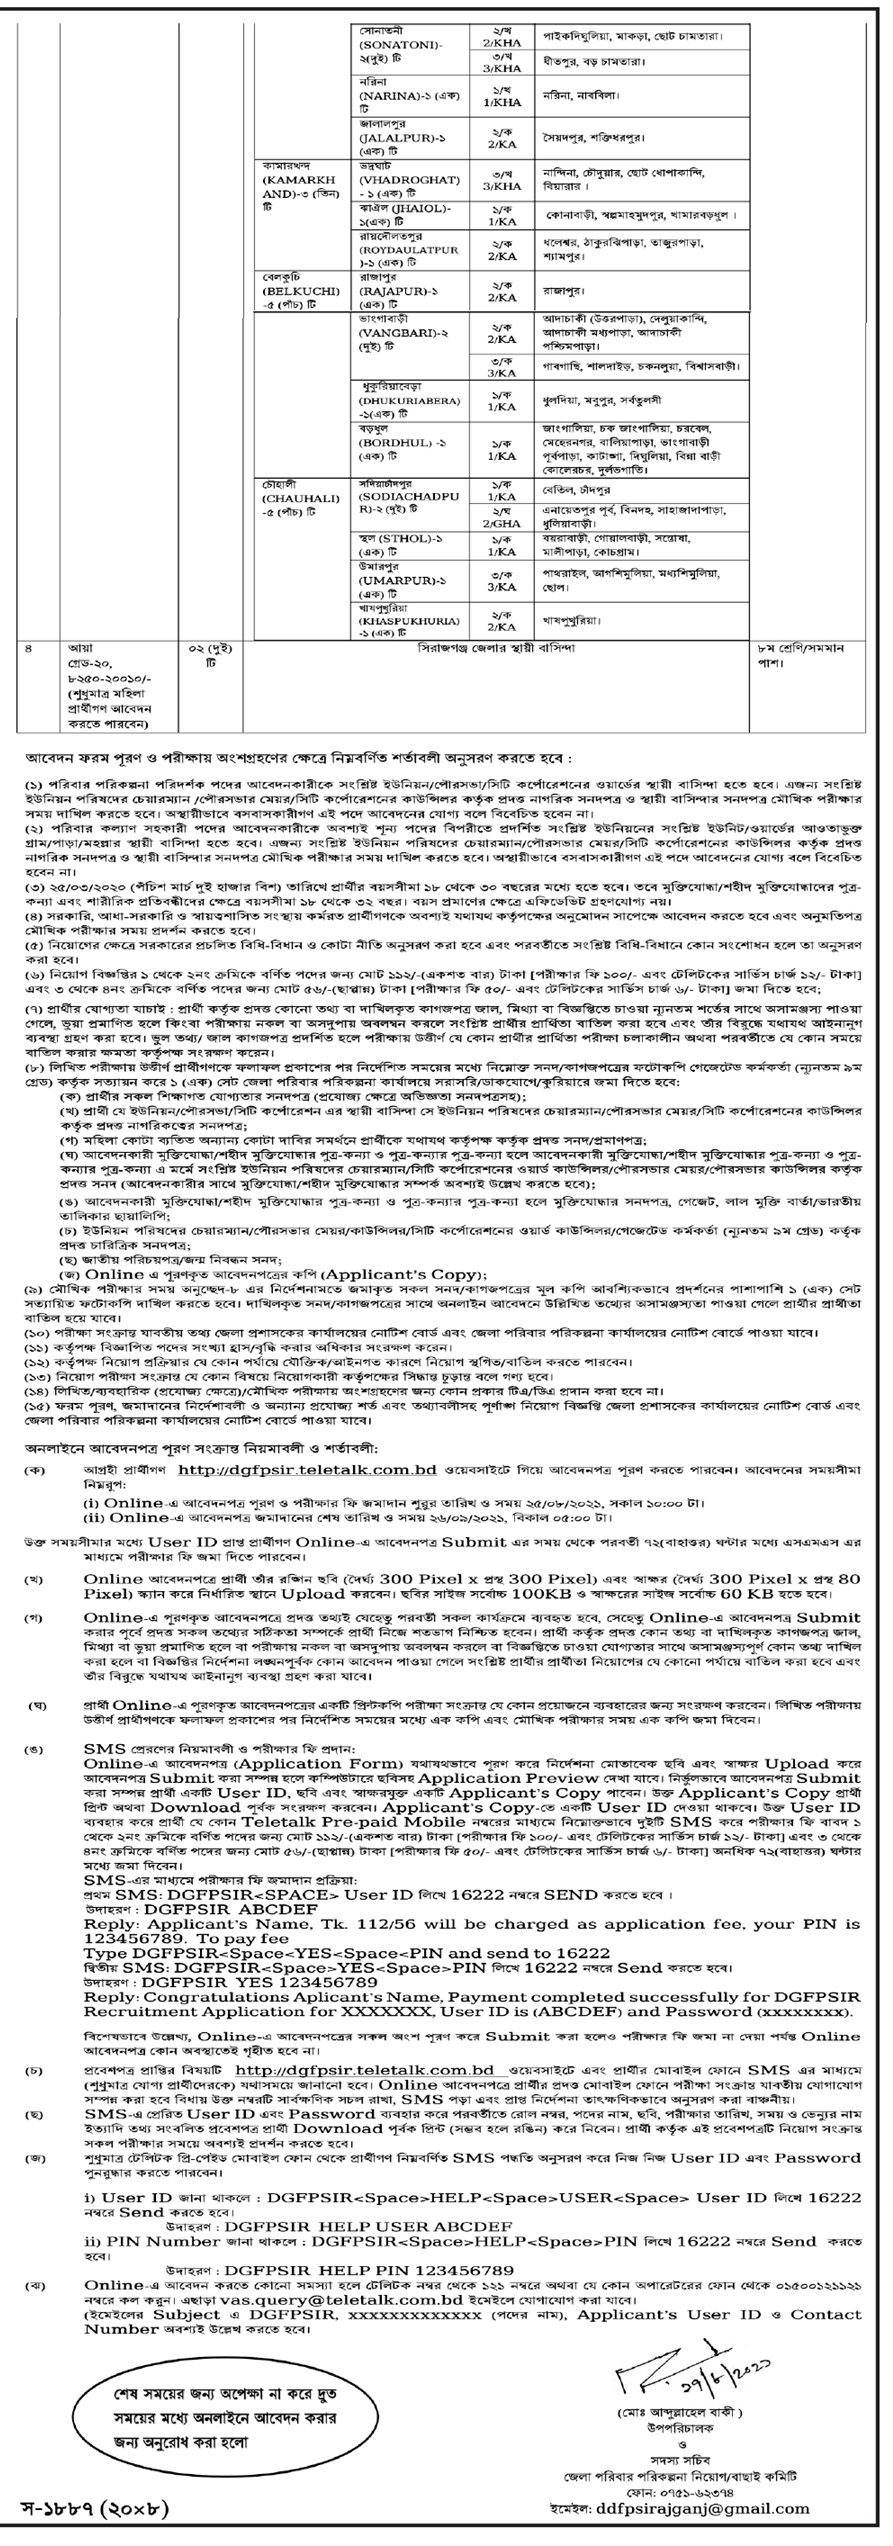 জালকুড়ি, নারায়ণগঞ্জ জেলা পরিবার পরিকল্পনা নিয়োগ বিজ্ঞপ্তি ২০২১ - Jalkuri, Narayanganj District poribar porikolpona job circular 2021 - poribar porikolpona job circular 2021